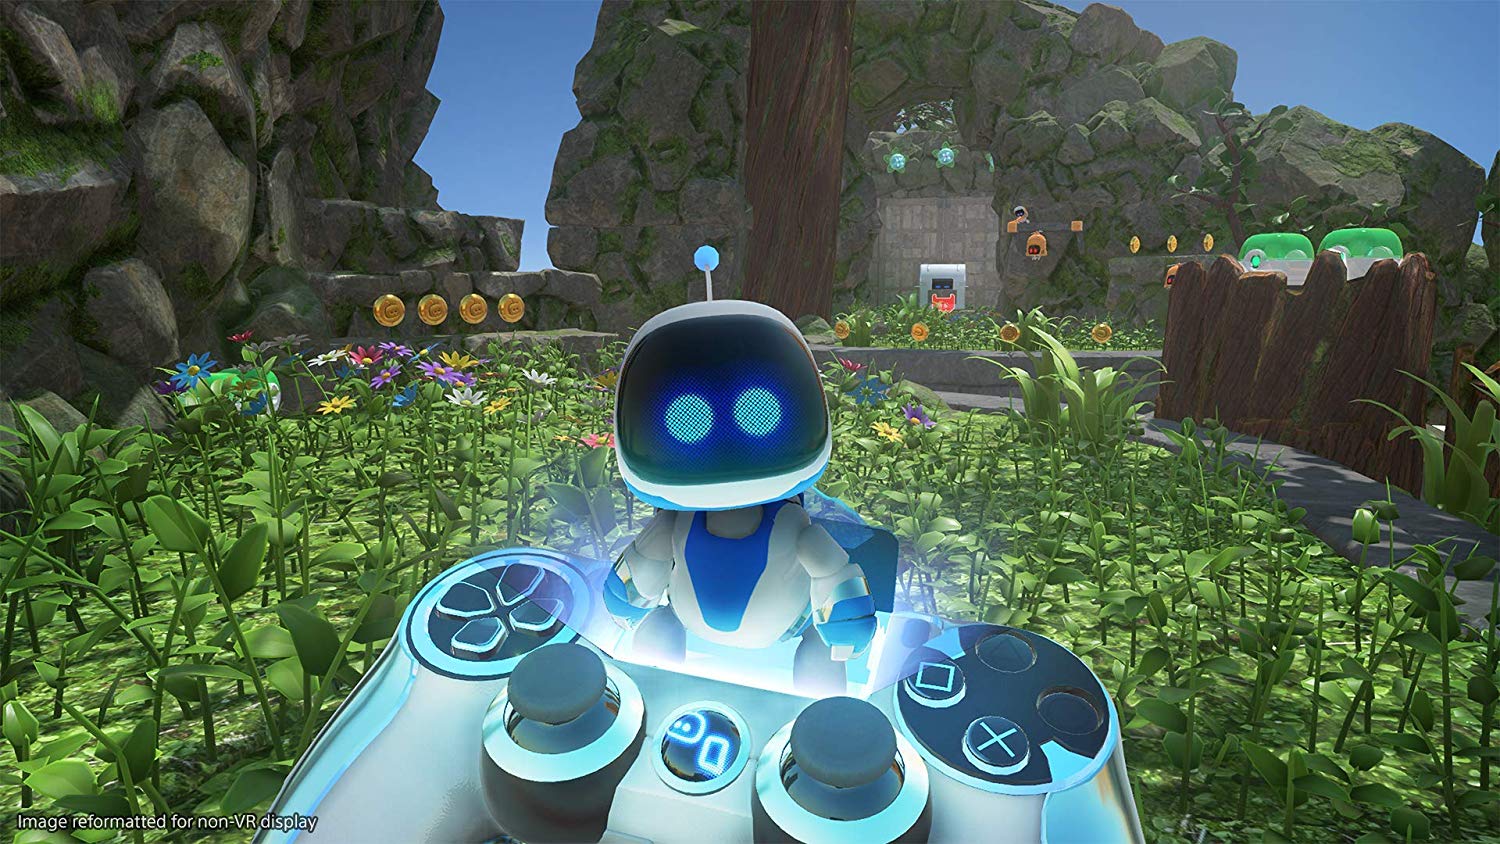 VR游戏新里程碑 《宇宙机器人拯救行动》正式上市 好评如潮